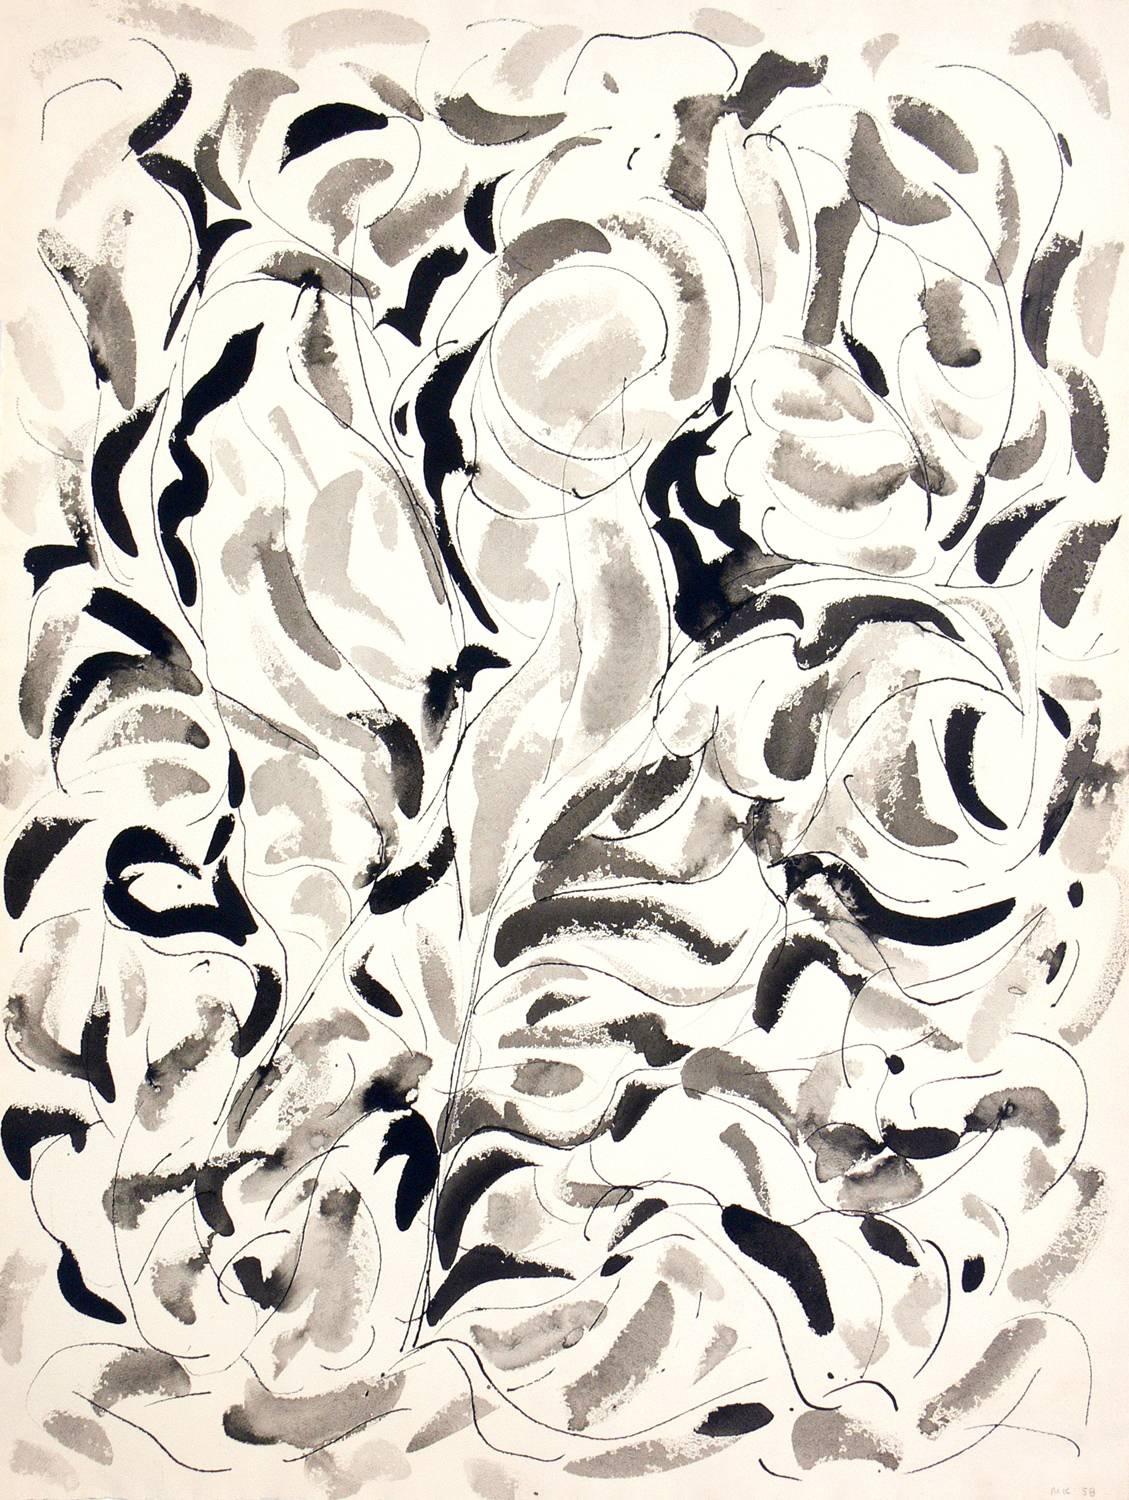 Peinture abstraite de Miriam Kubach, américaine, vers les années 1960. Elle est exécutée sur papier et a été encadrée professionnellement sous verre résistant aux UV dans un cadre de galerie laqué noir et propre.